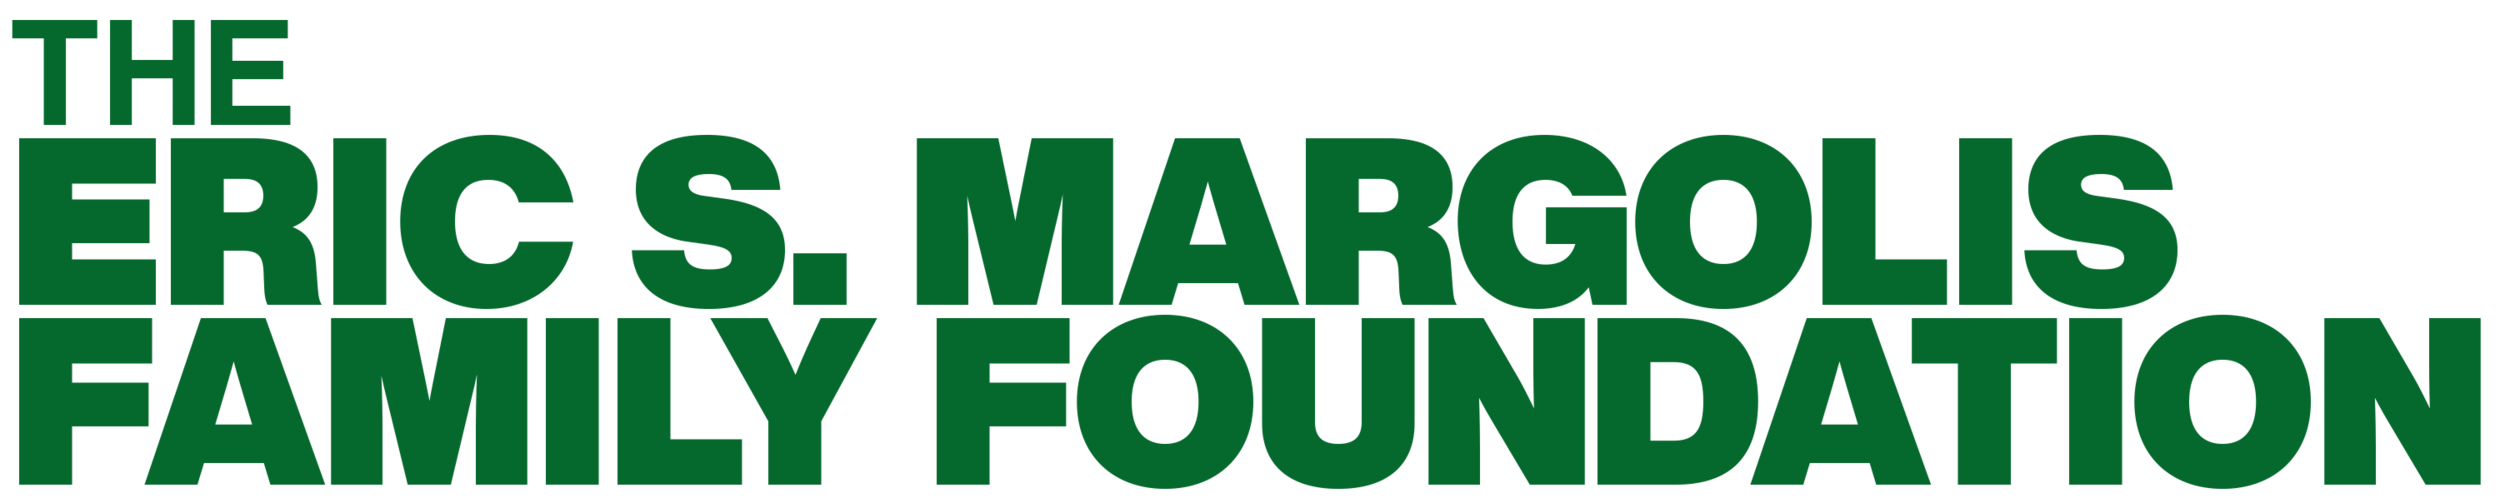 The Eric S. Margolis Family Foundation